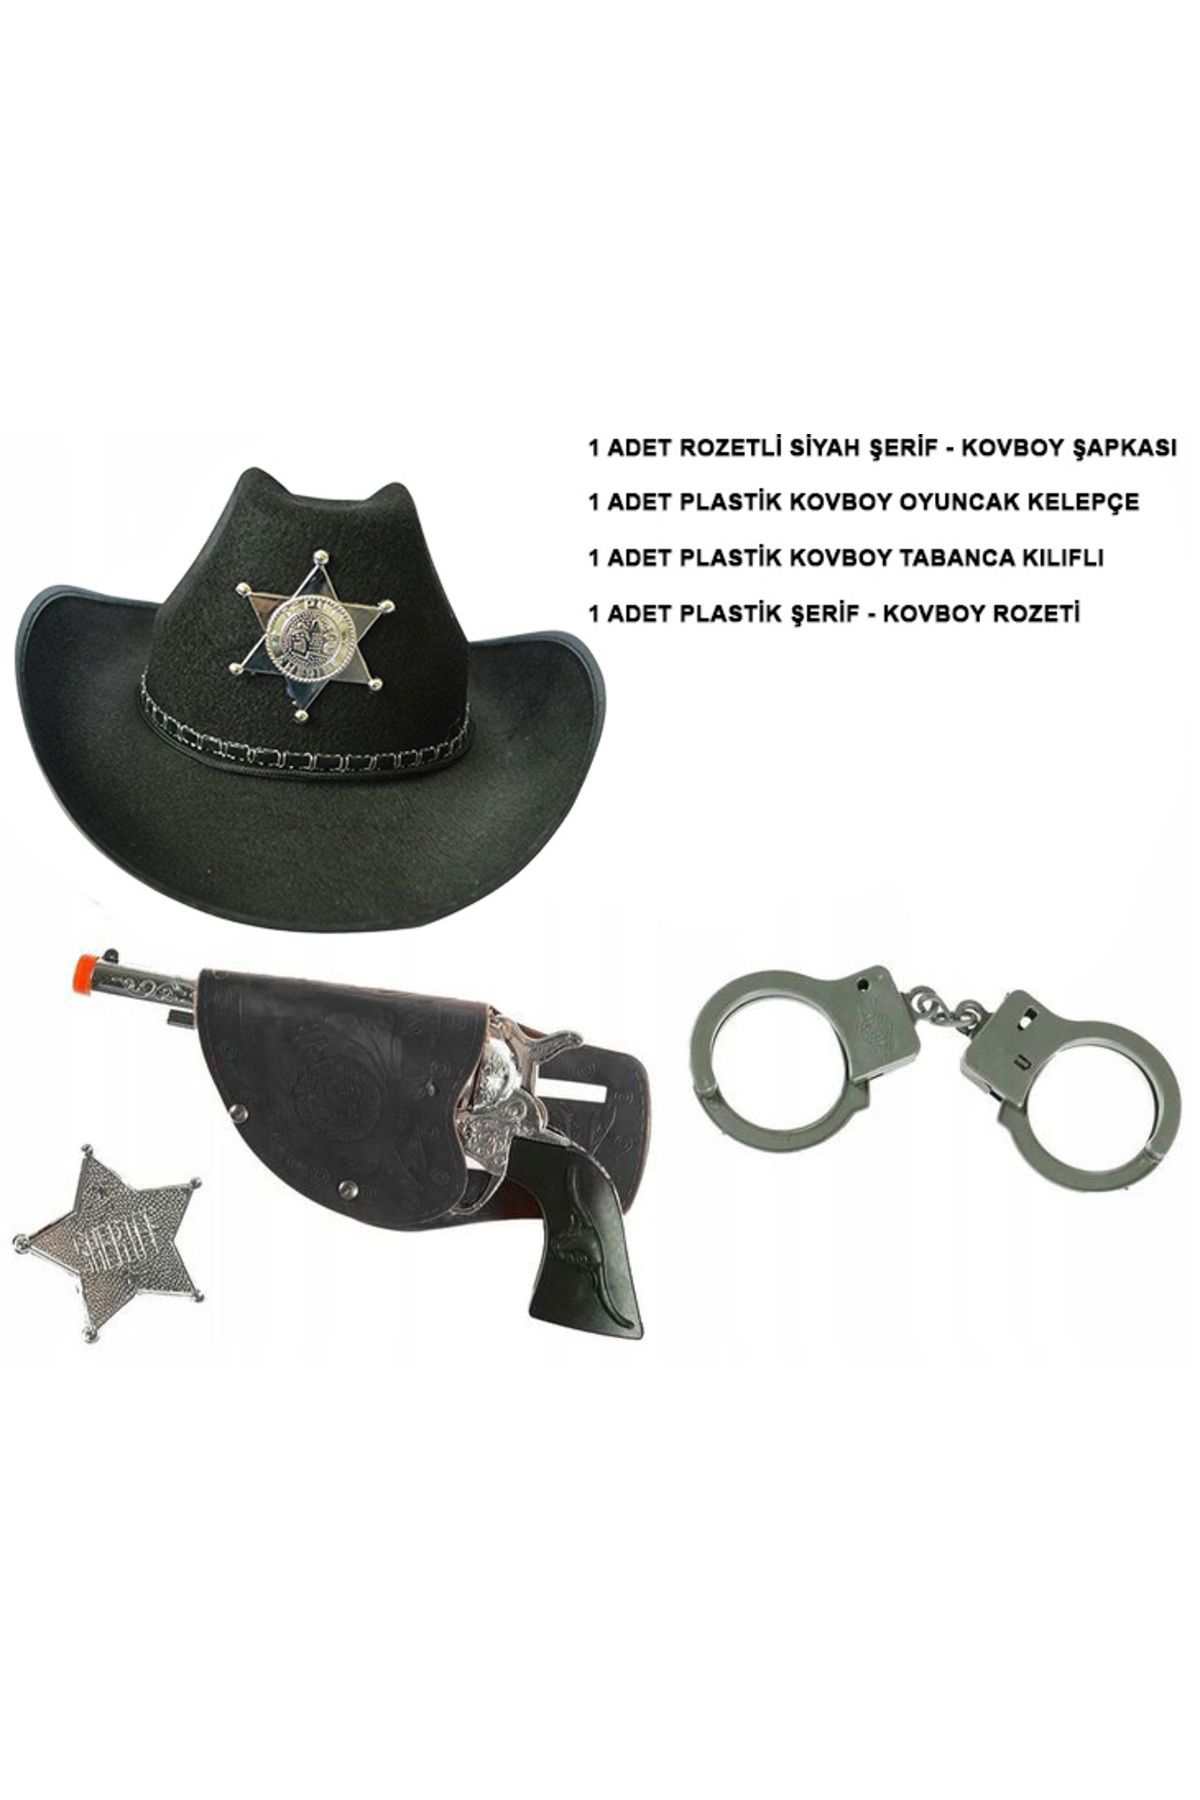 Go İthalat Çocuk Boy Siyah Şerif-Kovboy Şapka Tabanca Rozet ve Kelepçe Seti 4 Parça (3877)